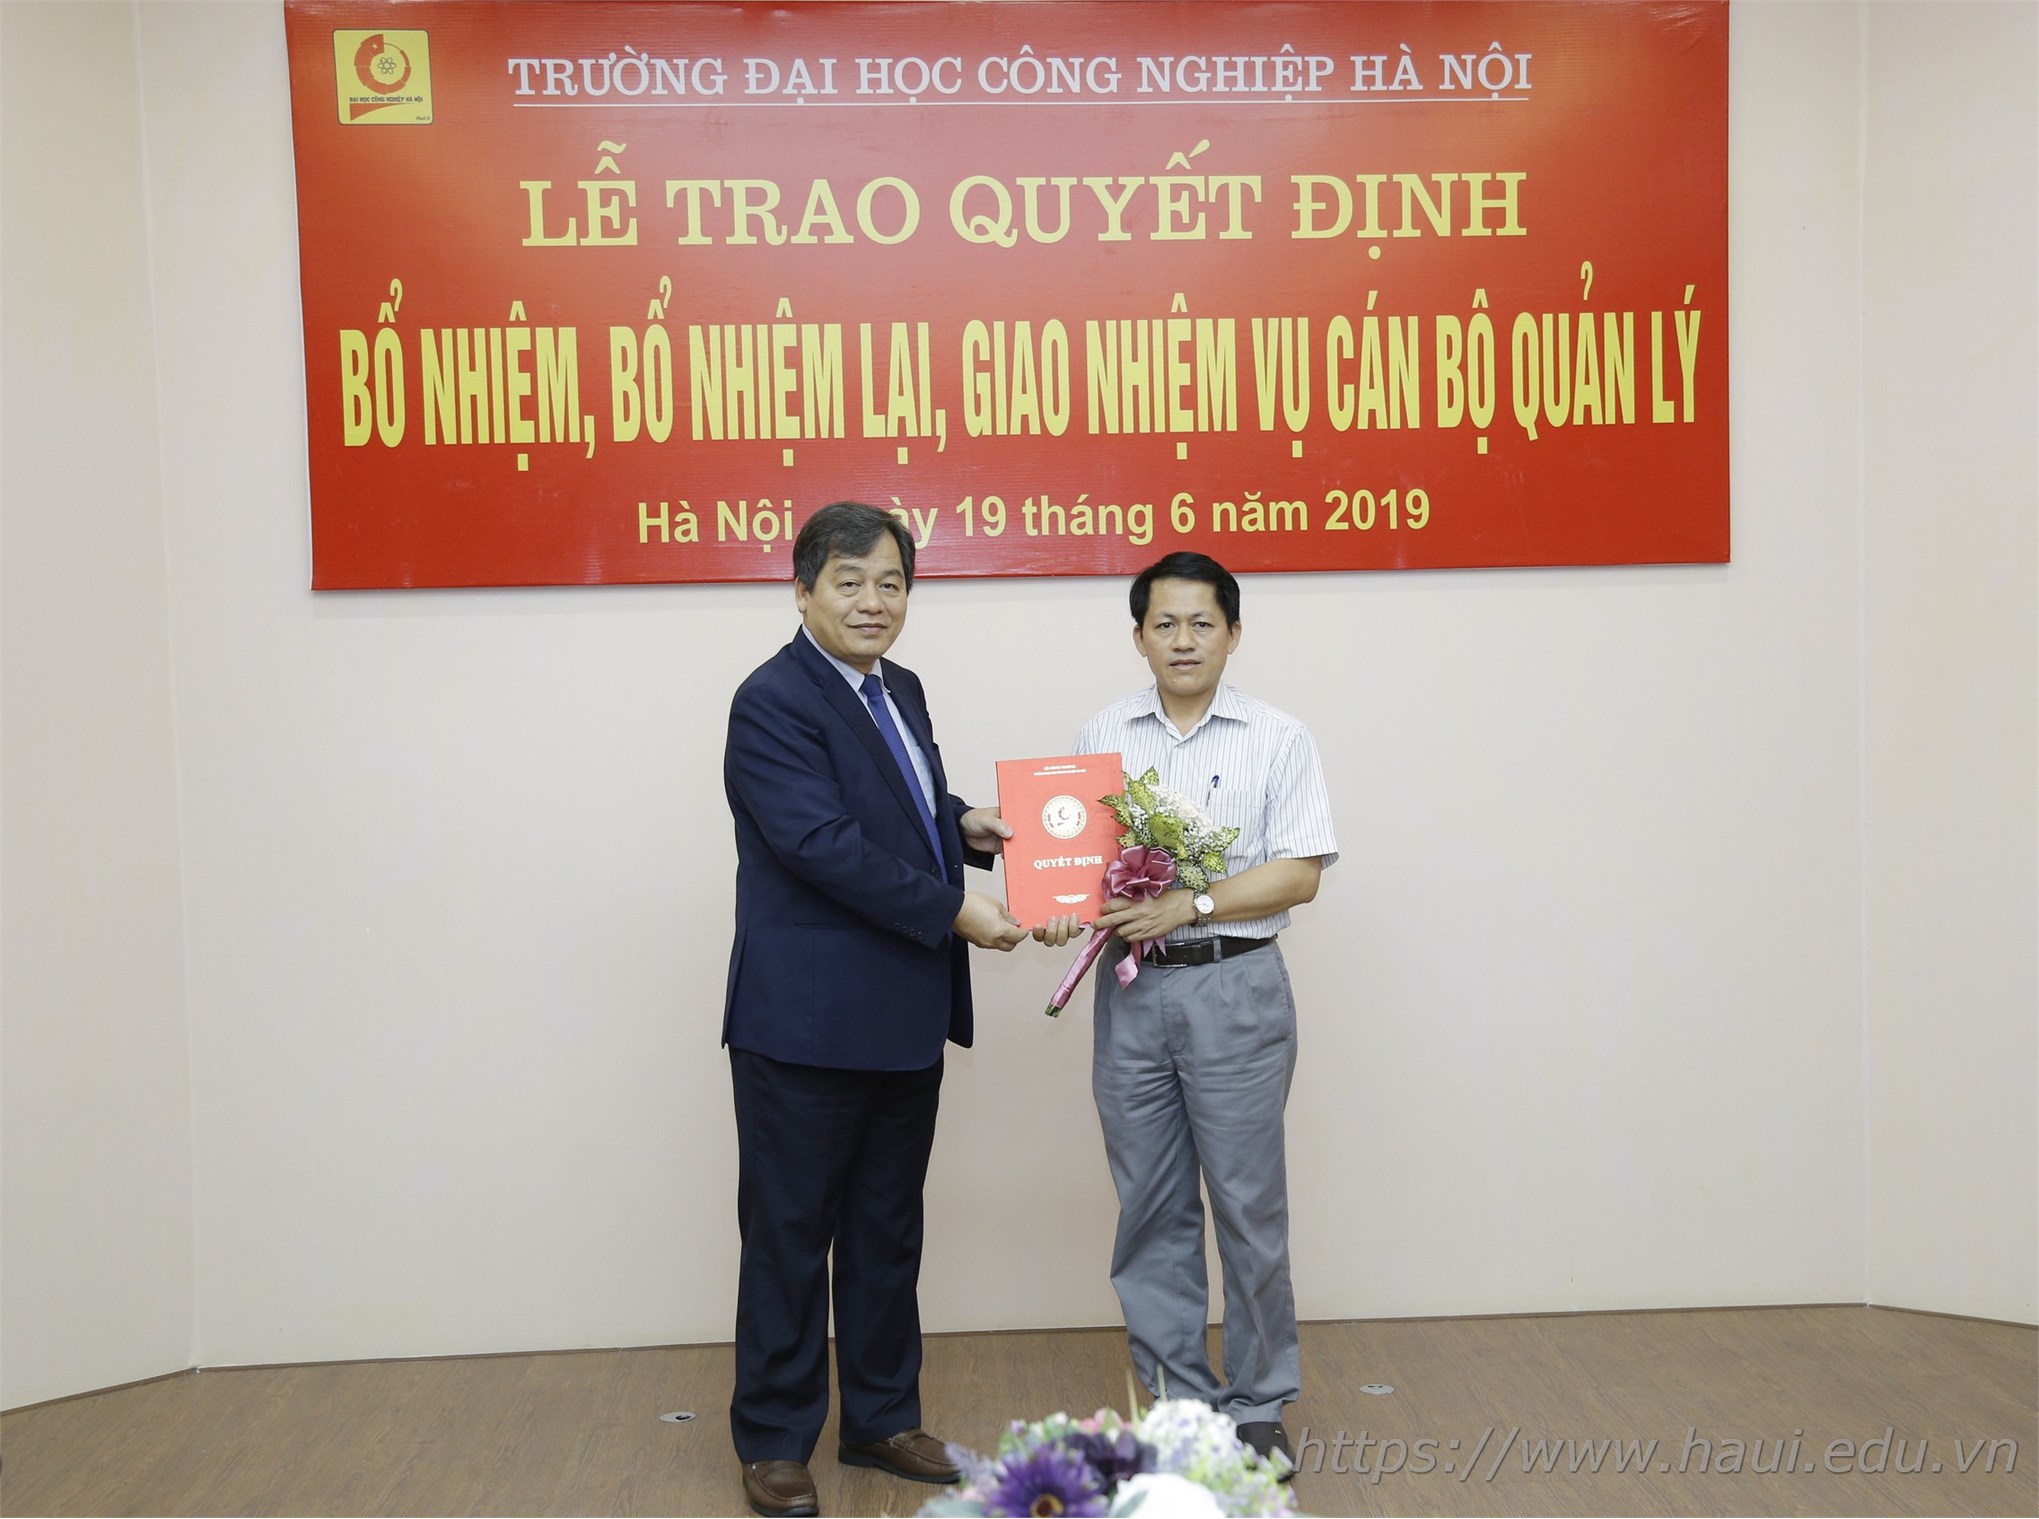 Đại học Công nghiệp Hà Nội trao quyết định bổ nhiệm cán bộ quản lý